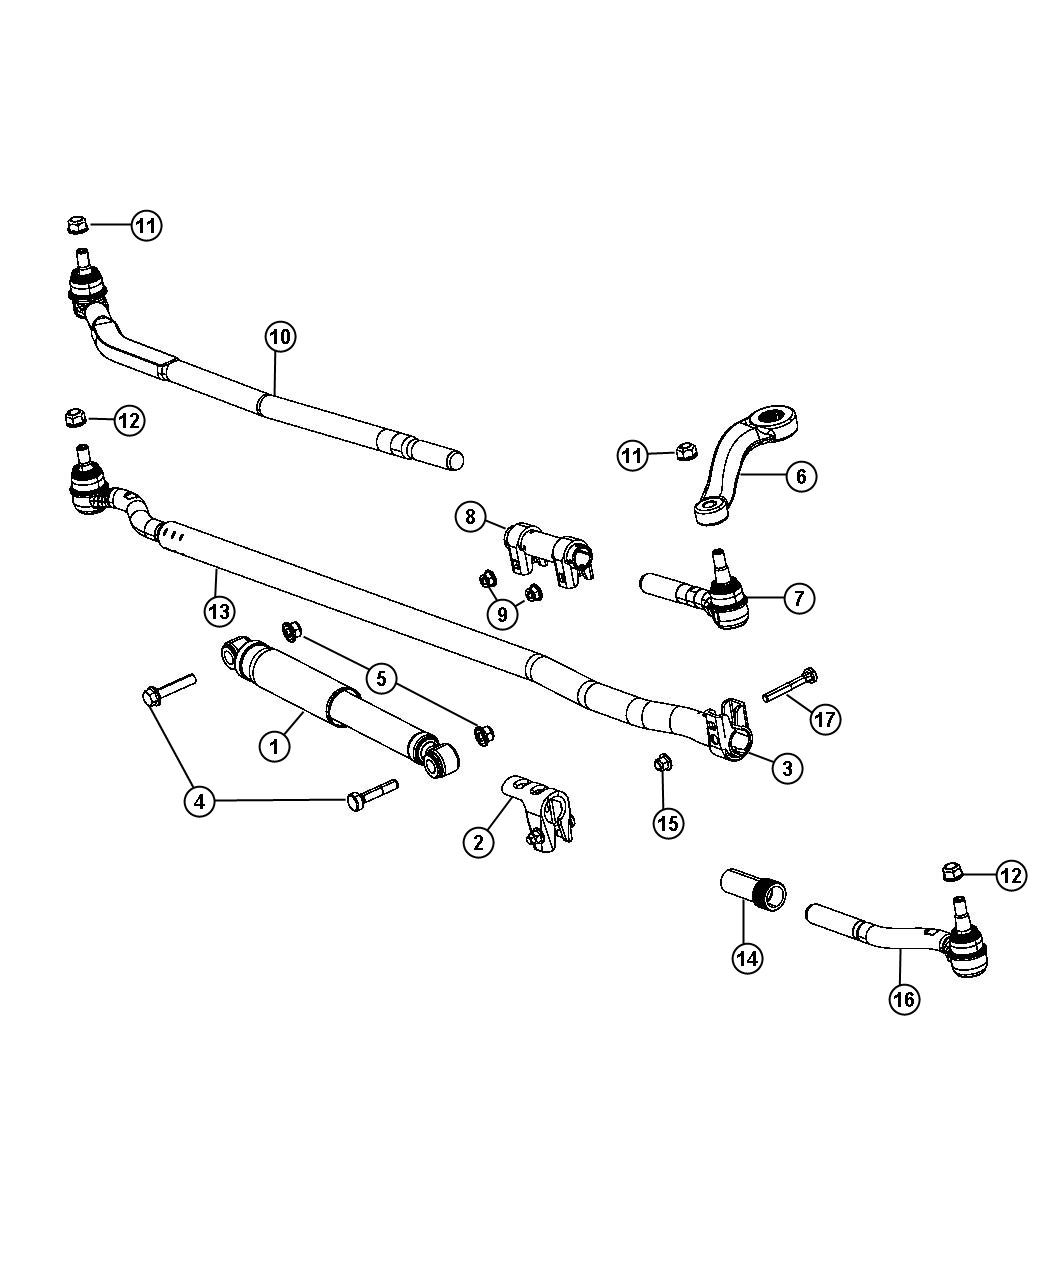 Parallelogram Steering Diagram